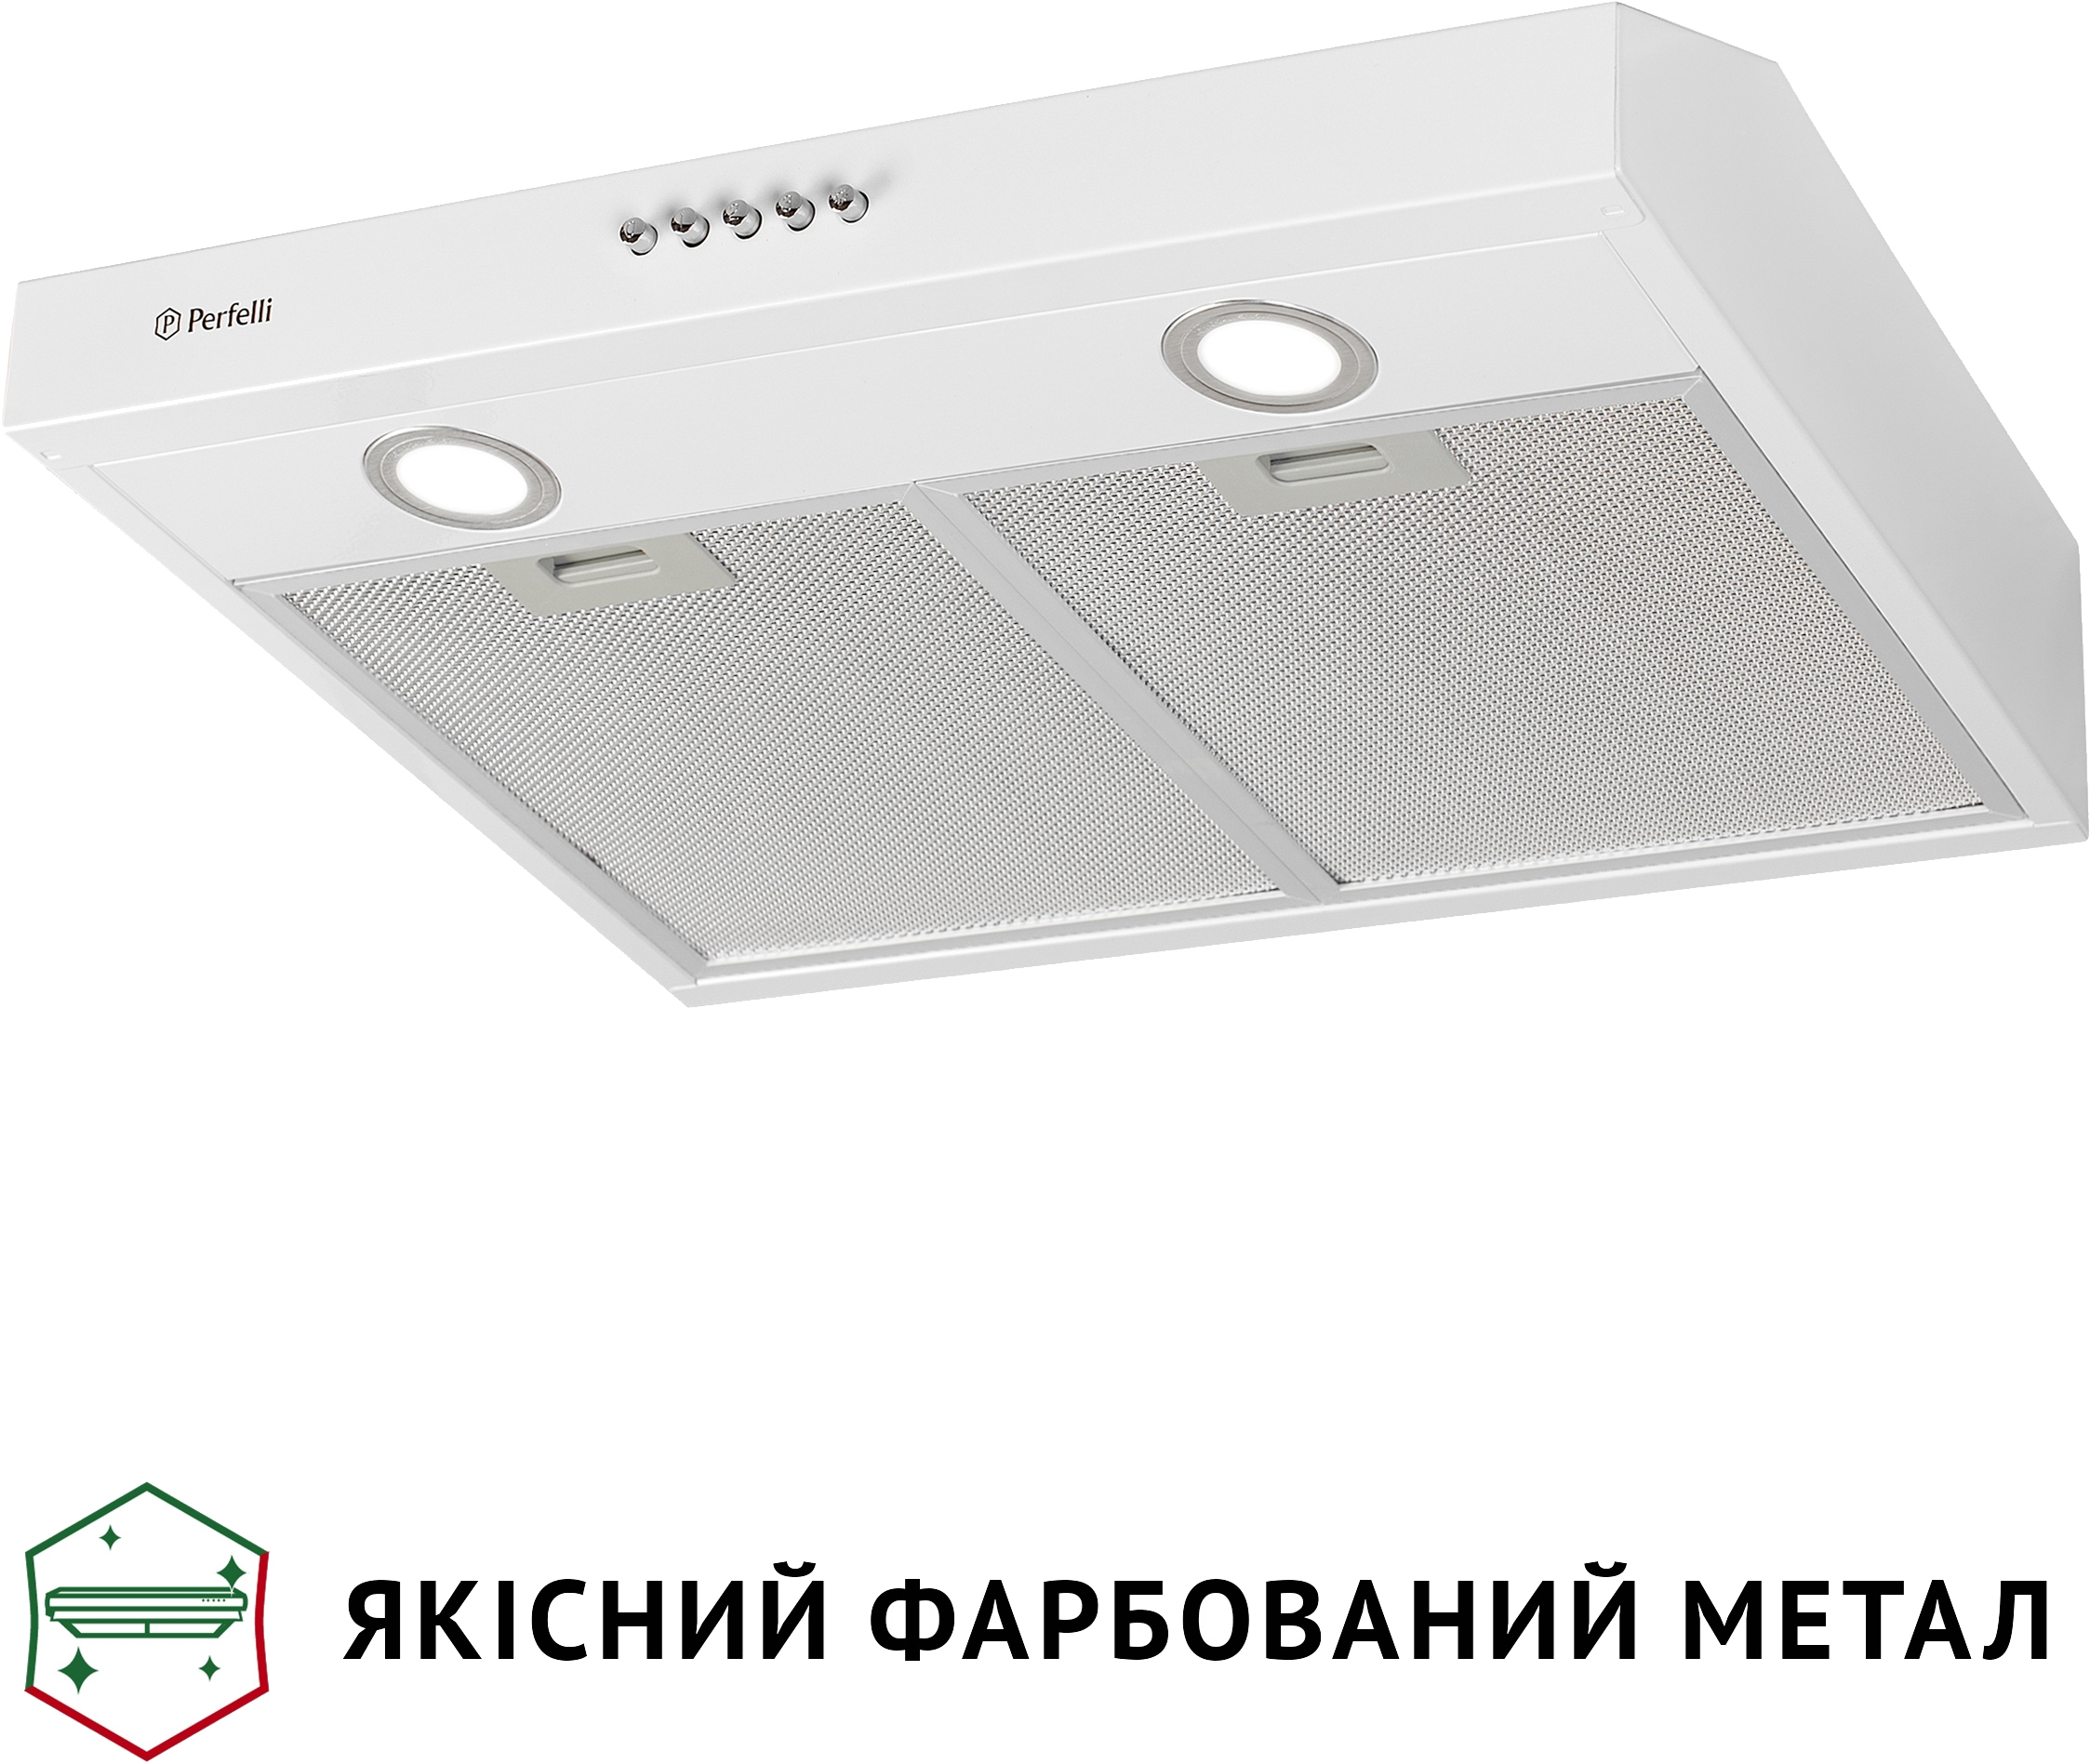 продаём Perfelli PL 5002 W LED в Украине - фото 4